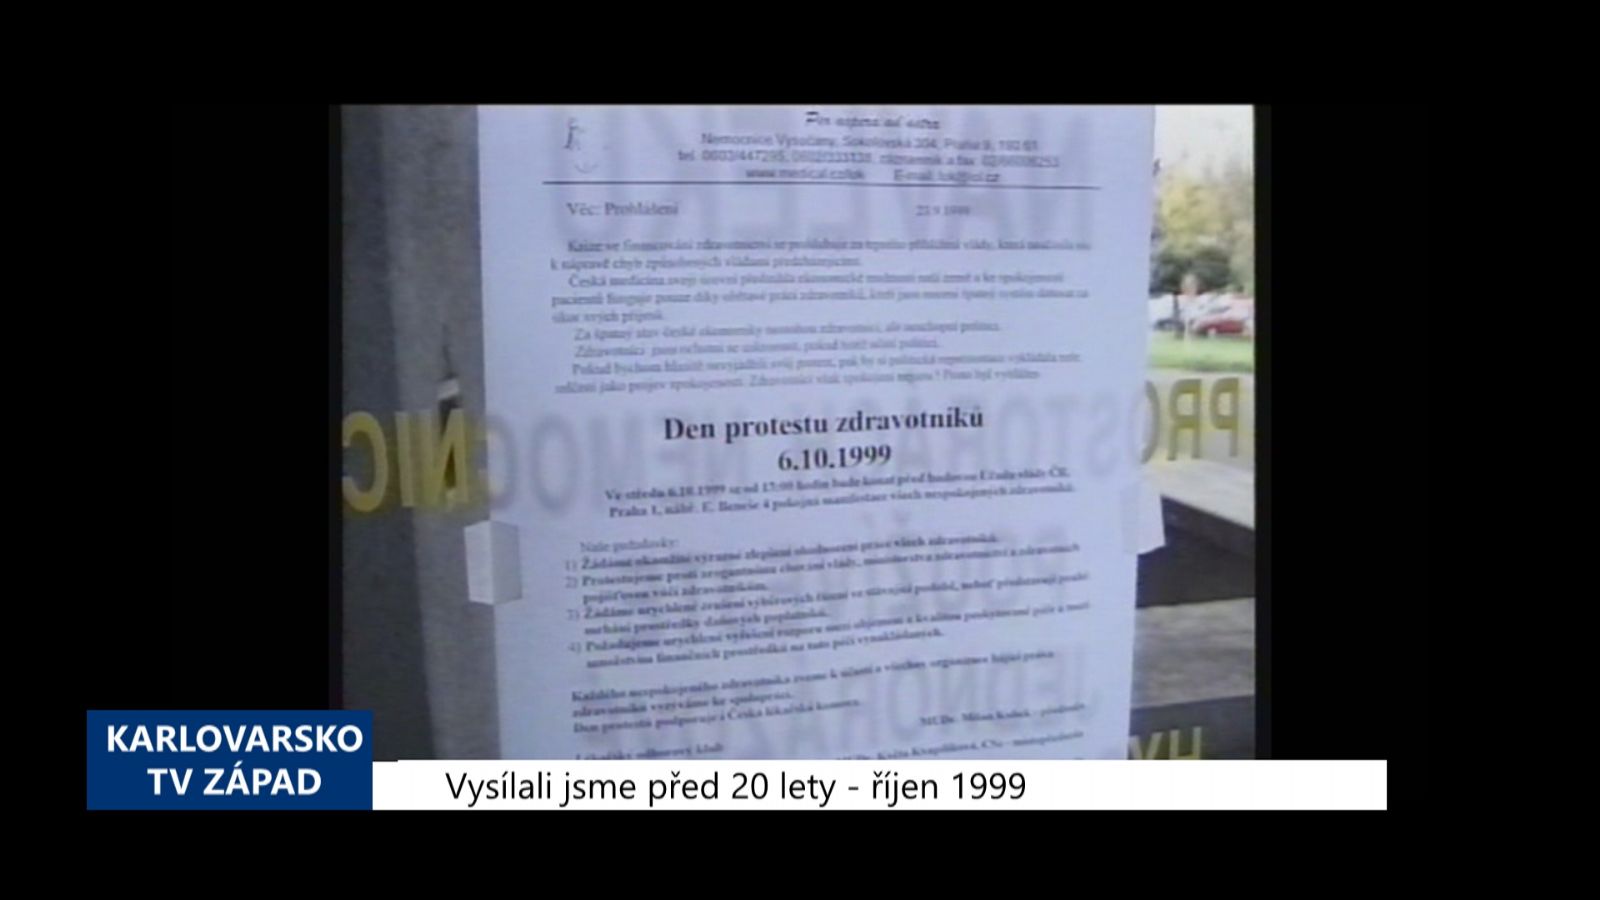 1999 – Cheb: Odboráři vyhlásili v nemocnici Den protestů (TV Západ)